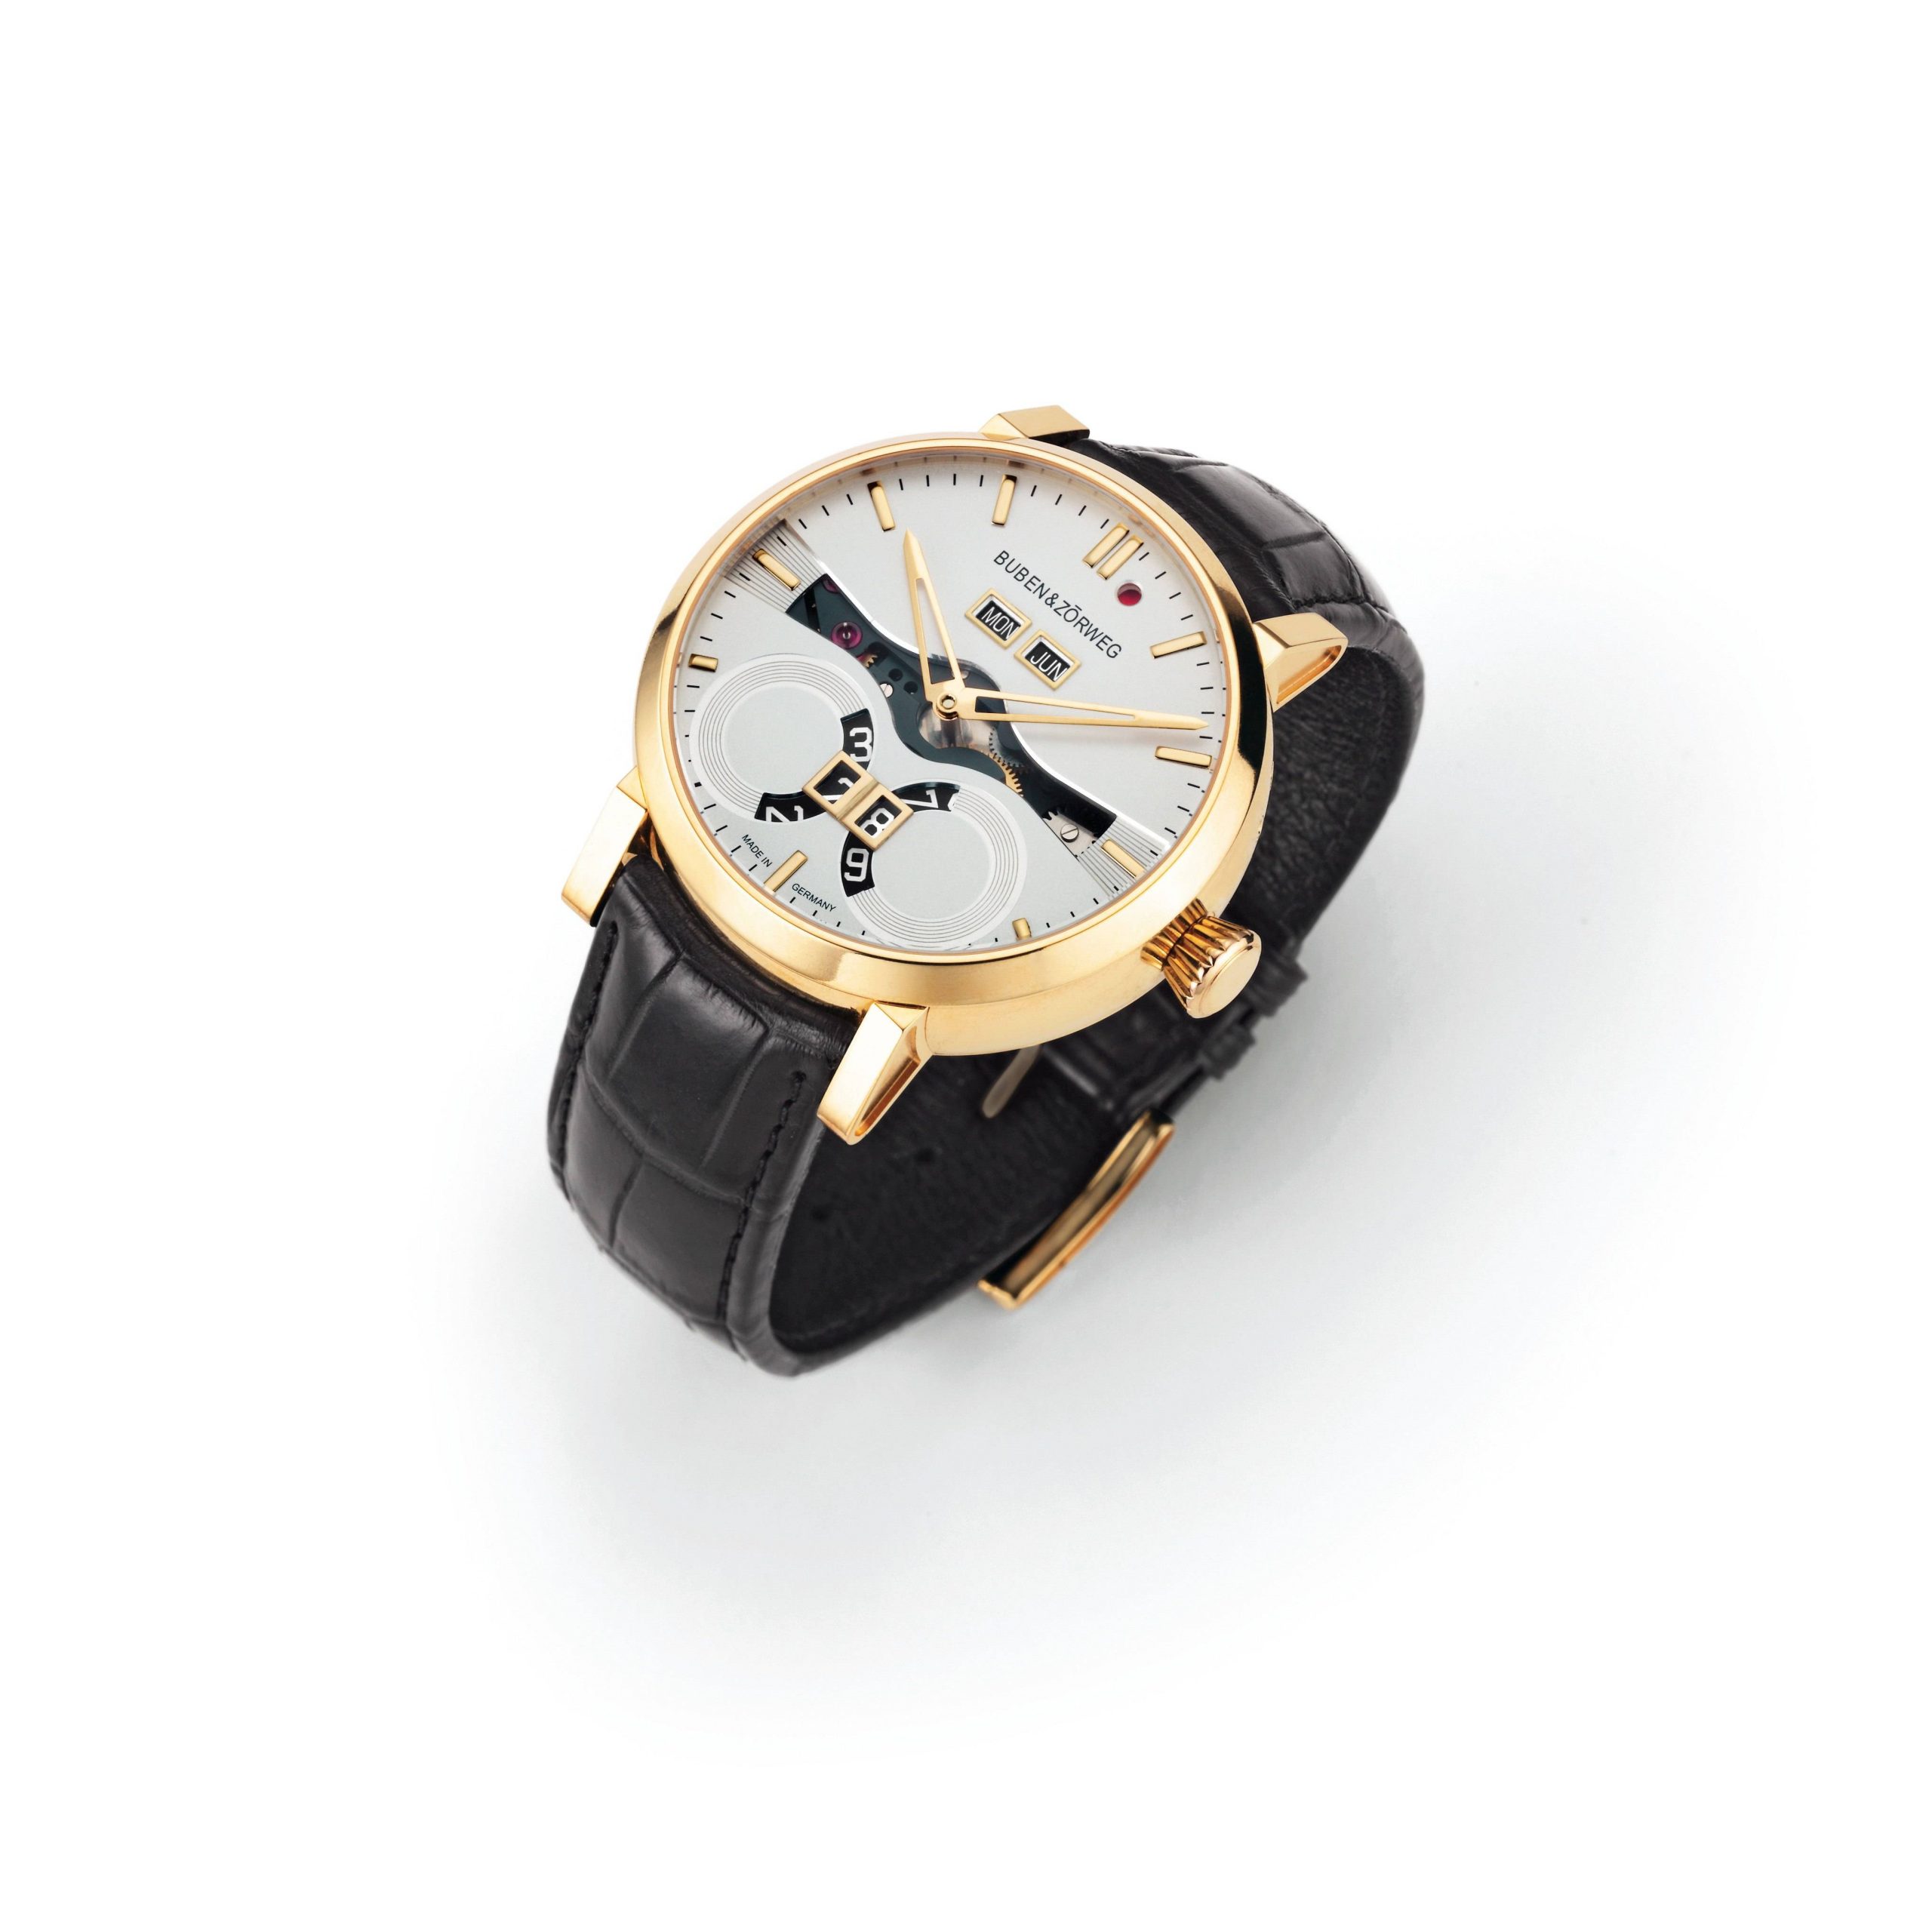 The First BUBEN&ZORWEG Wristwatch Finally Available